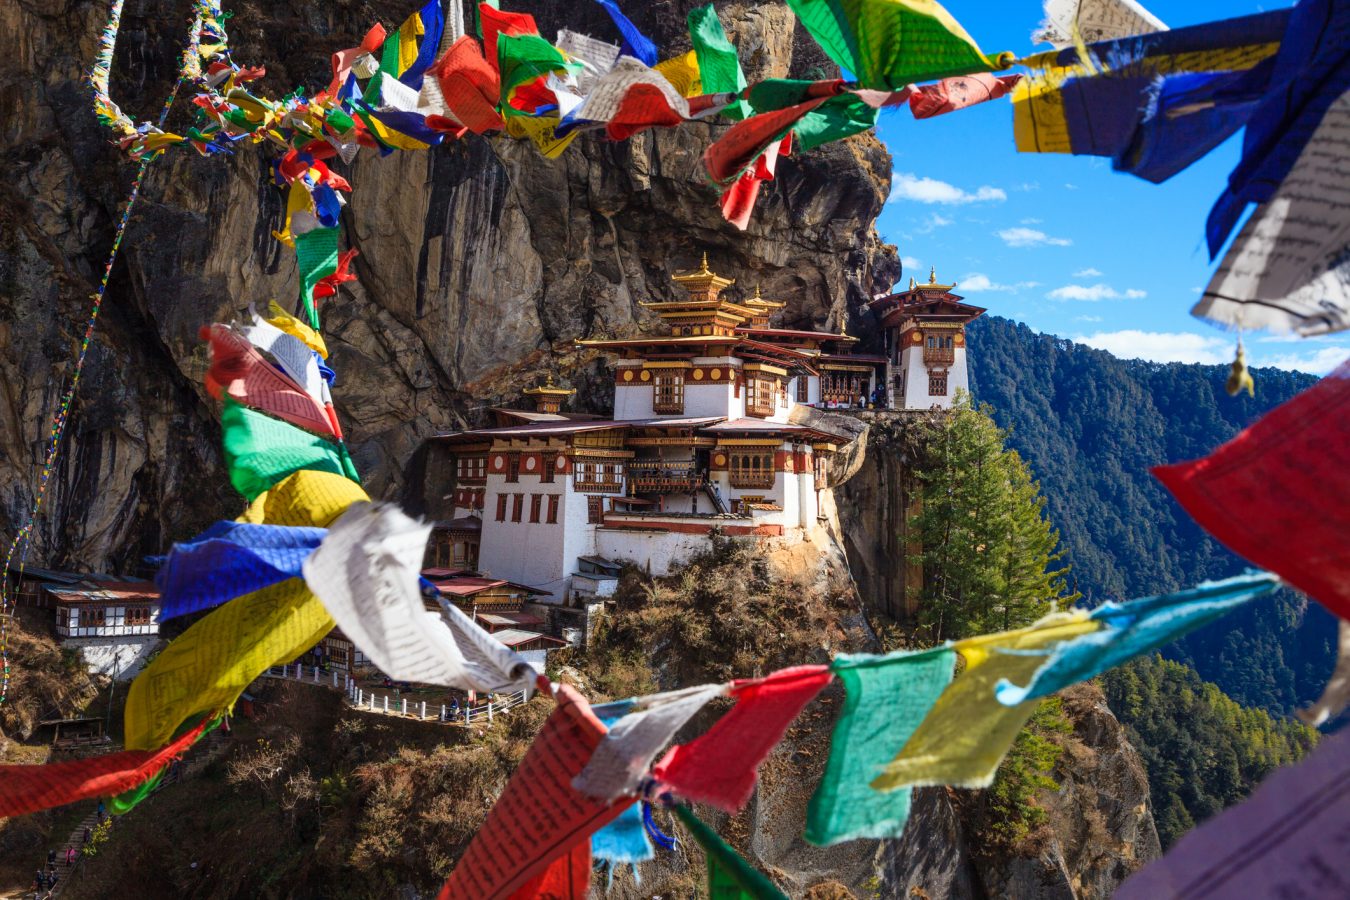  ブータンに知る人ぞ知る「ペニス村」があった！ 世界195カ国を回るYouTuberが驚愕…の画像1